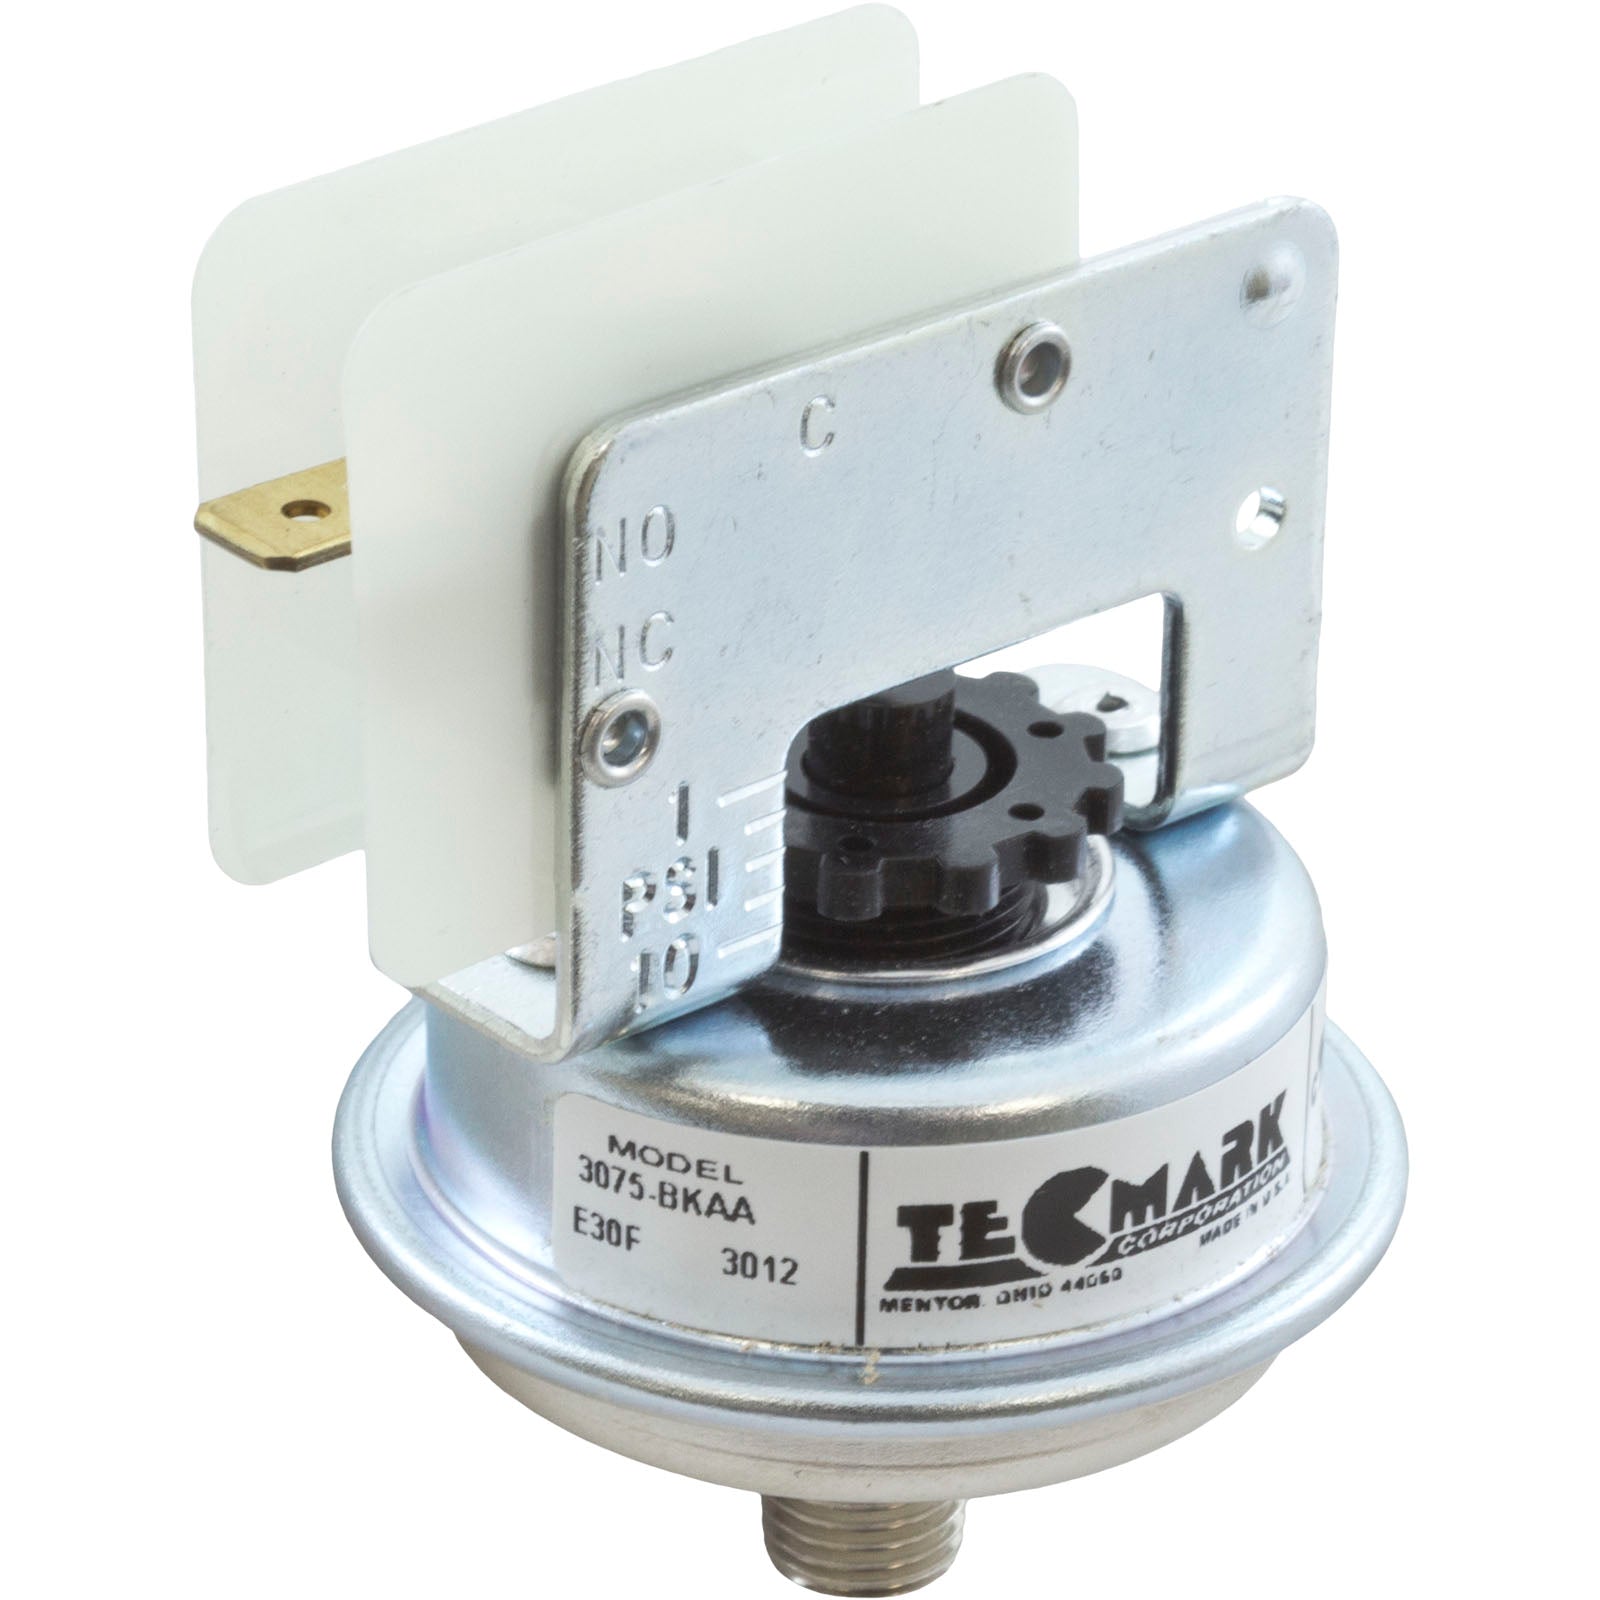 Pressure Switch, Zodiac Jandy LRZE, 1-10 psi/ R0015500